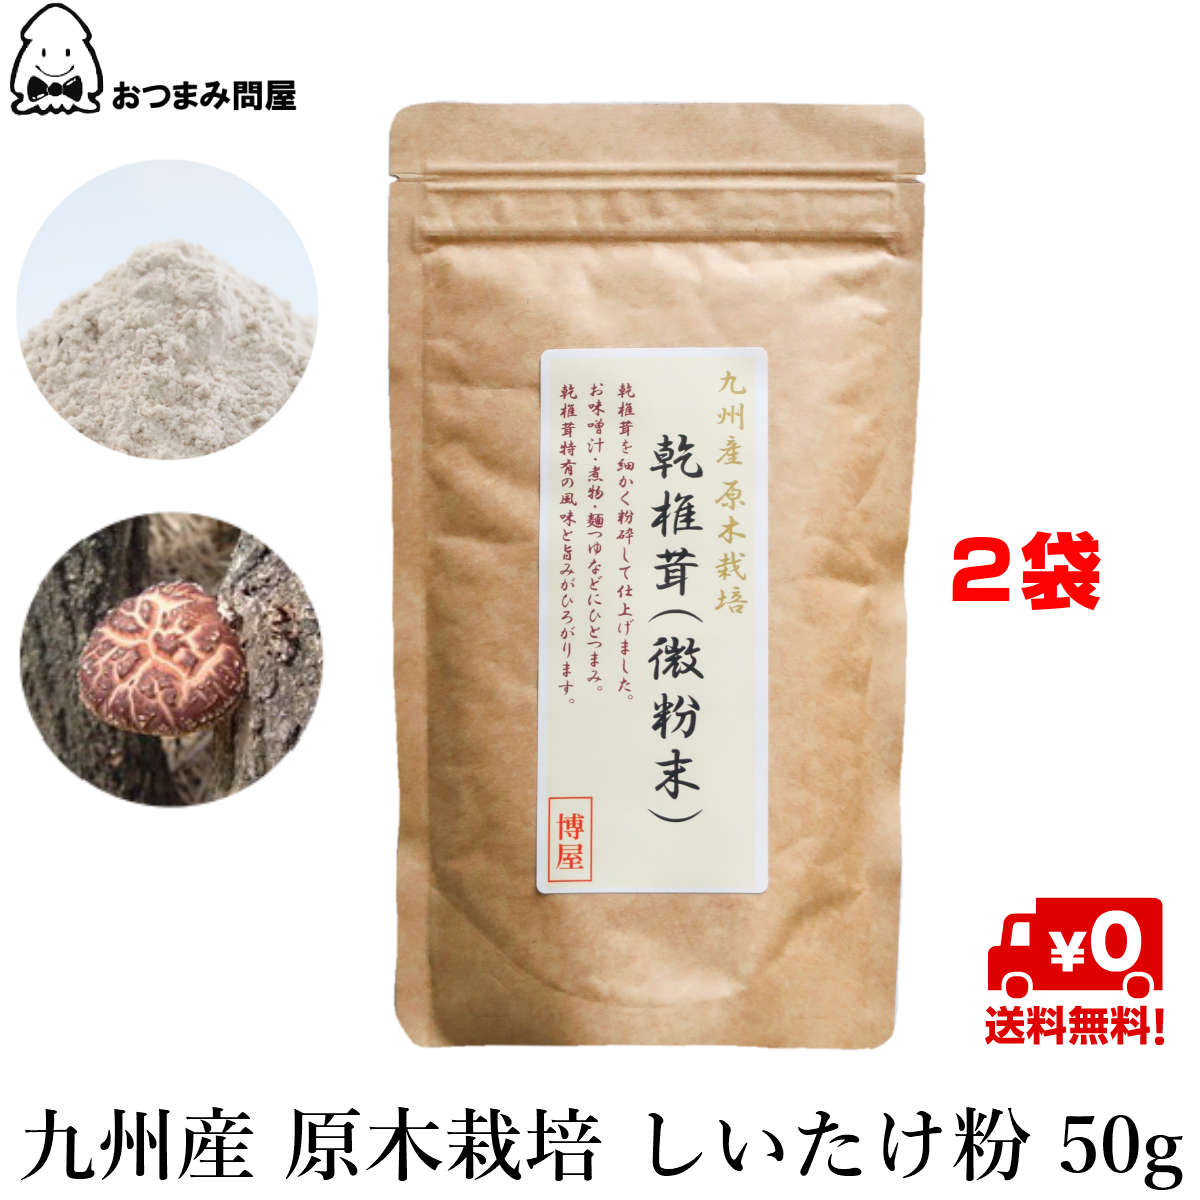 九州產 段木栽培香菇粉末 香菇粉末 香菇(微粉末) 50g x 2包 常溫保存 夾鏈袋裝日本必買 | 日本樂天熱銷